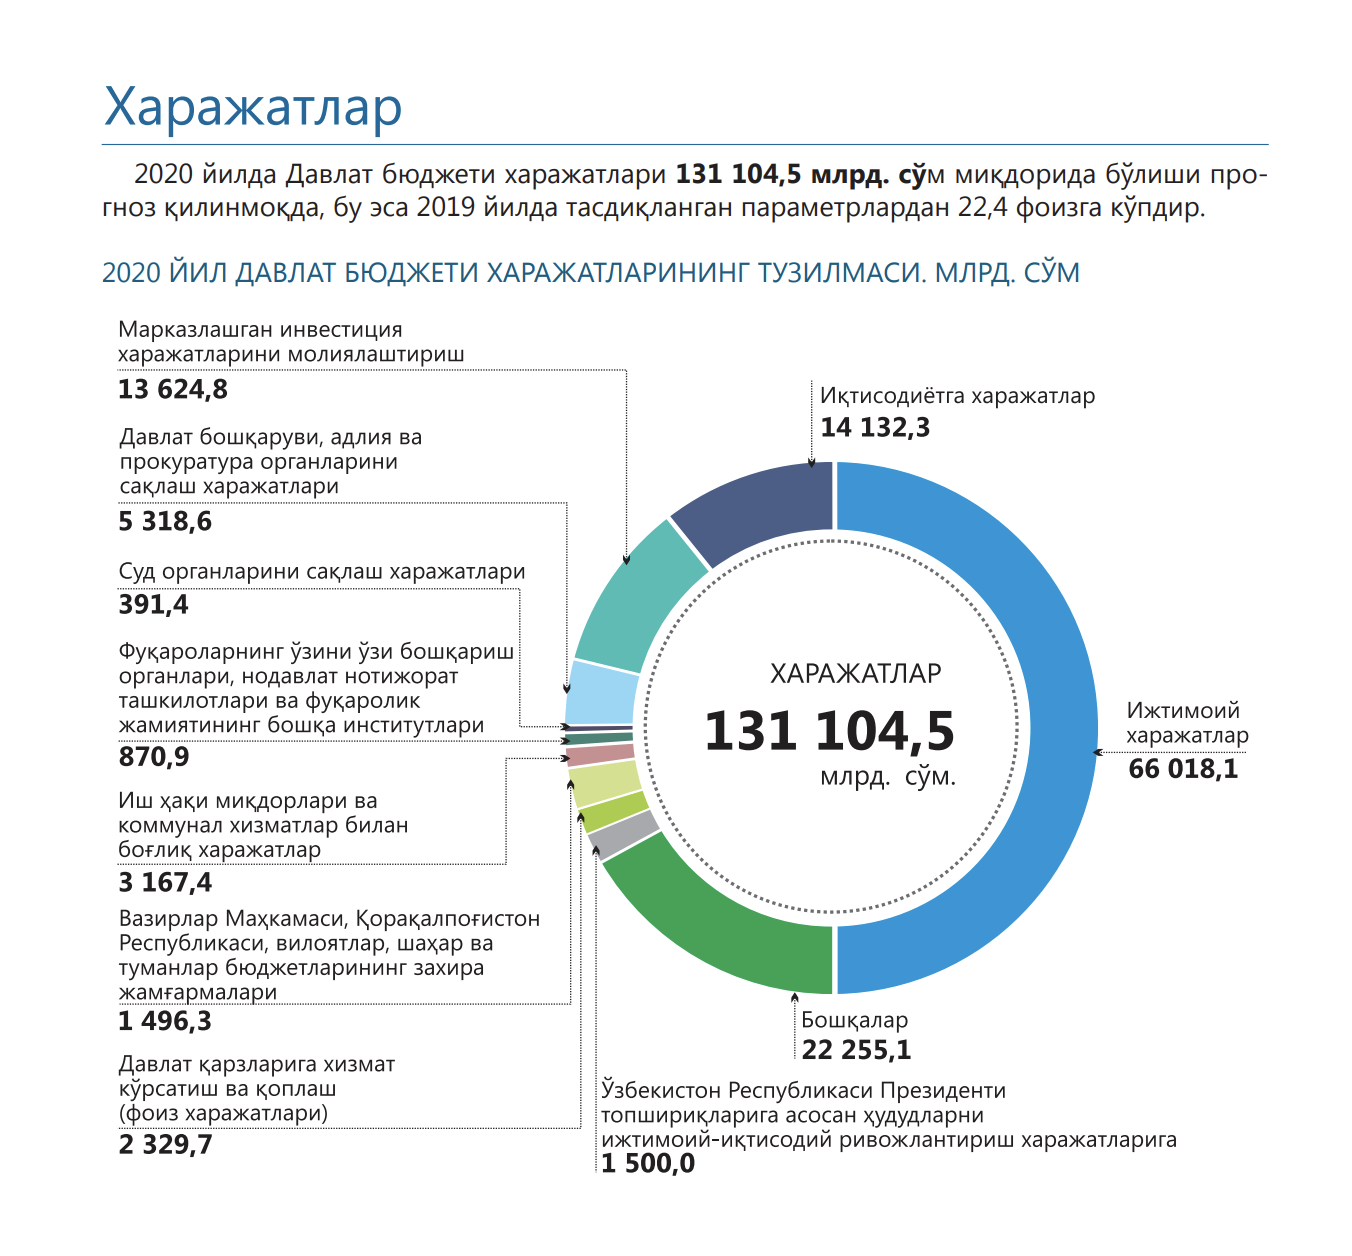 Федеральный бюджет россии доклад. Структура расходов госбюджета 2020. Структура госбюджета Узбекистана. Структура доходов госбюджета Узбекистана. Бюджет Узбекистана на 2020.